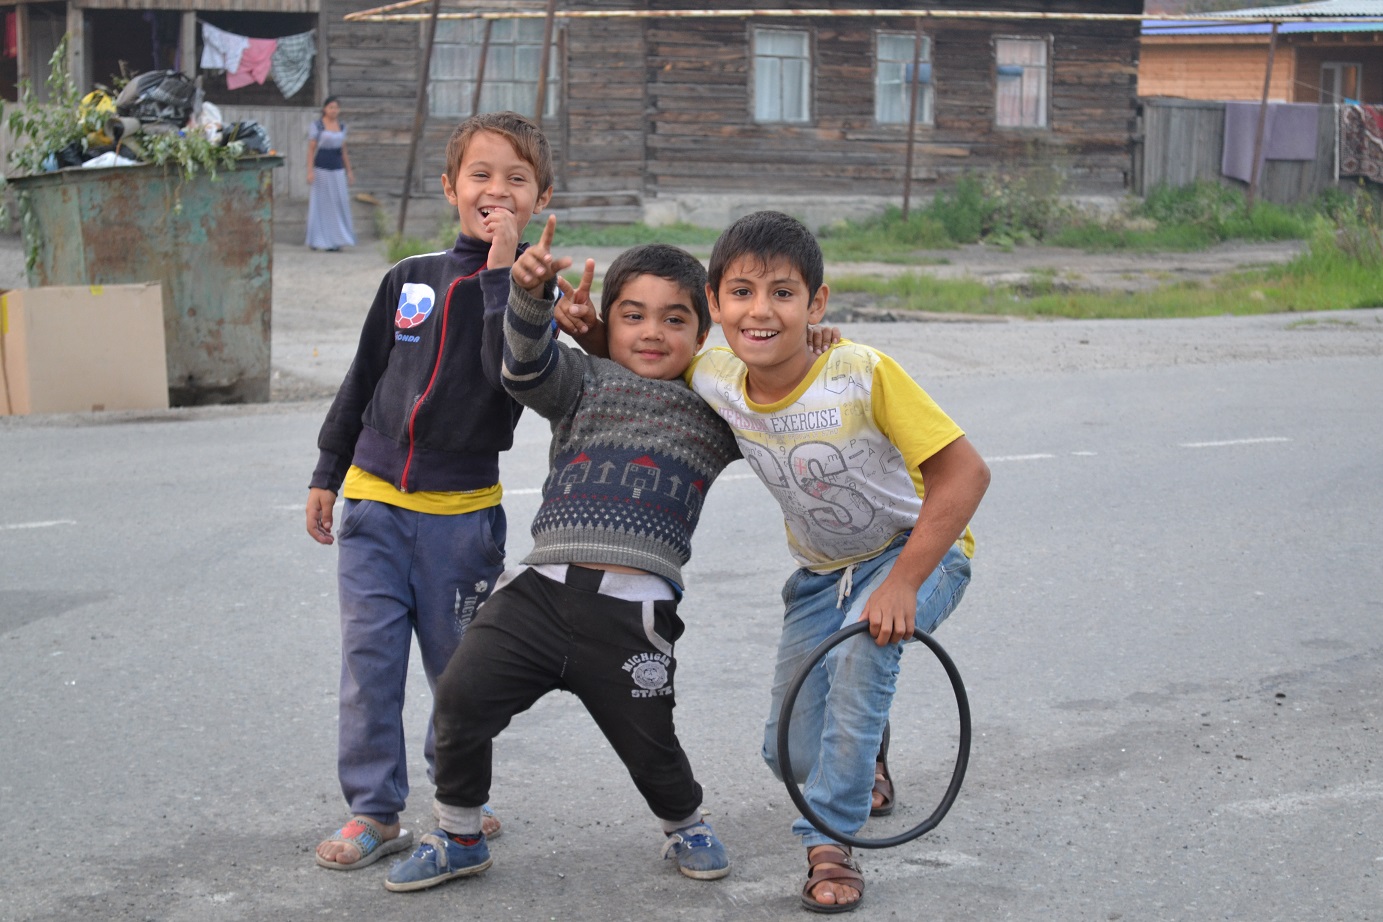 Нахаловка в Тюмени в поселке Нефтяников - 28 июля 2016 года